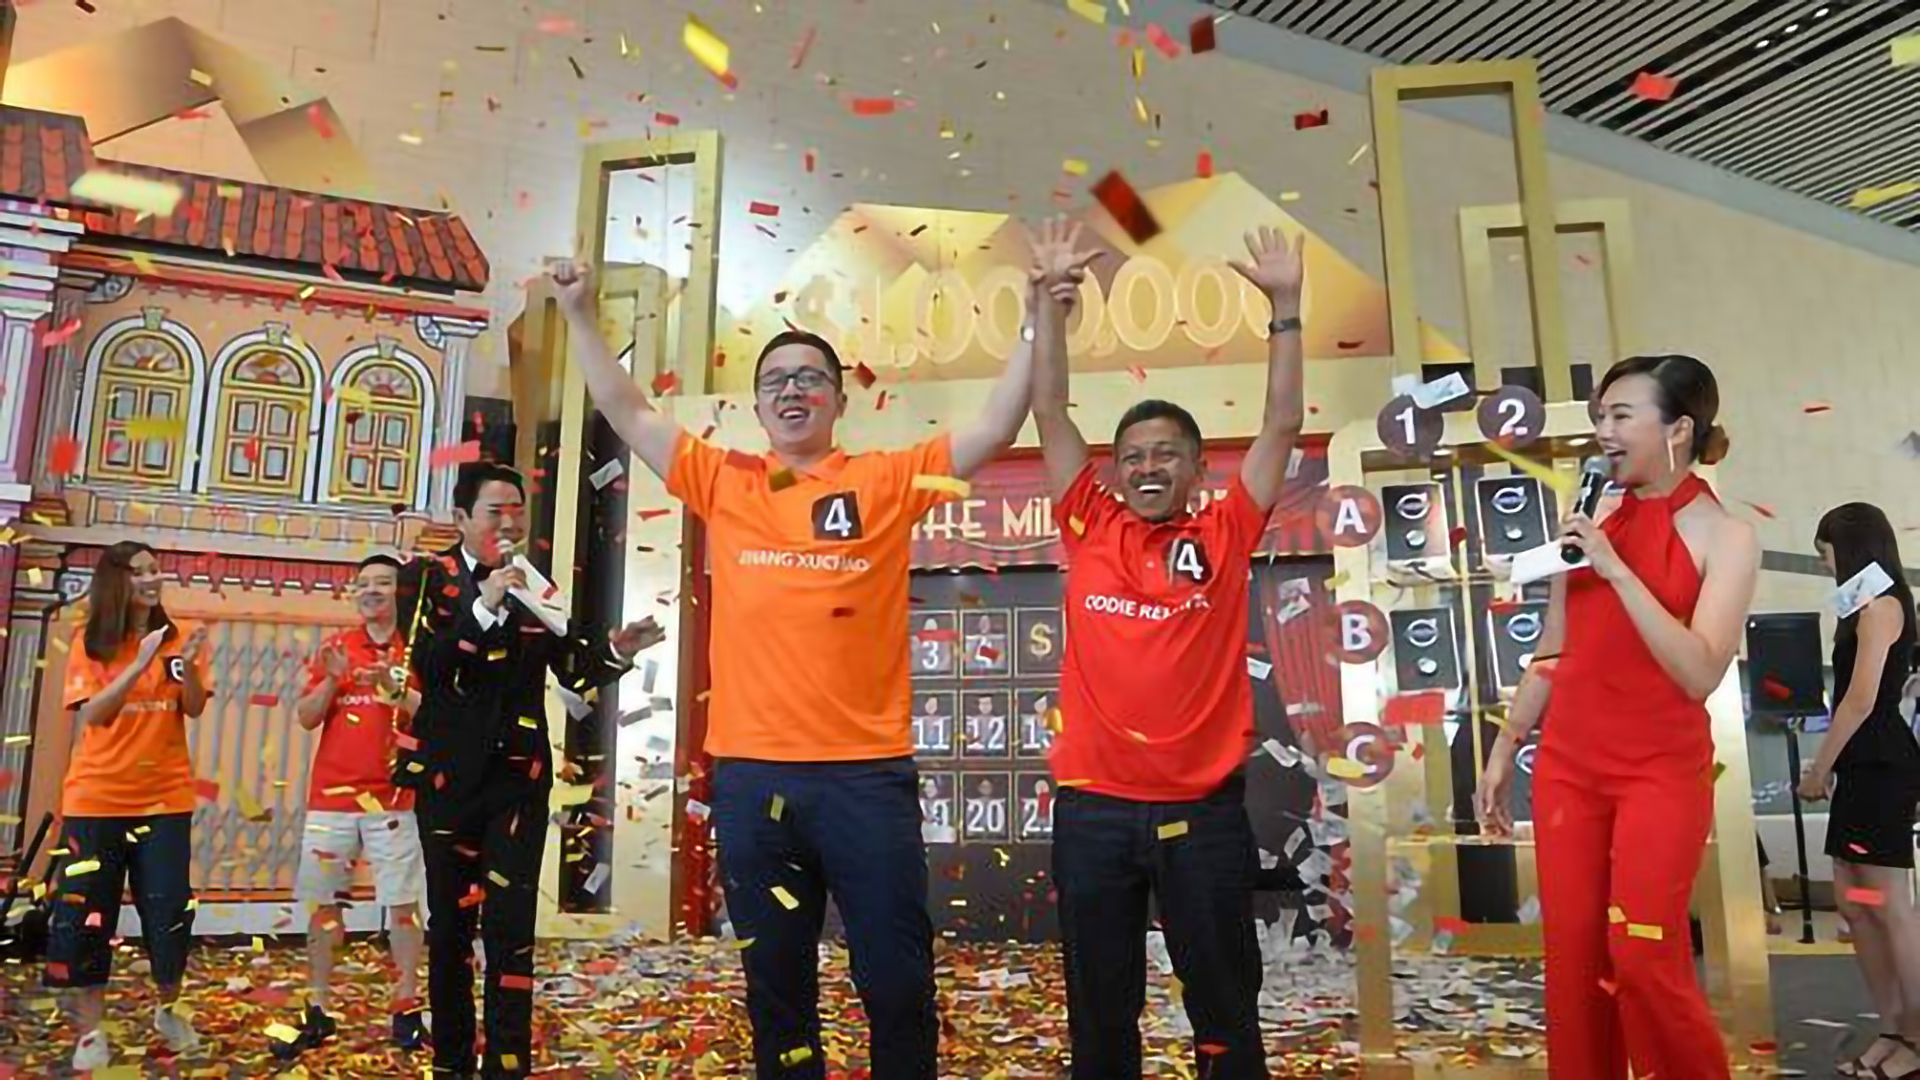 Pengusaha dari Indonesia dan pelatih baseball dari Cina Memenangkan Millionaire Grand Draw Changi Airport